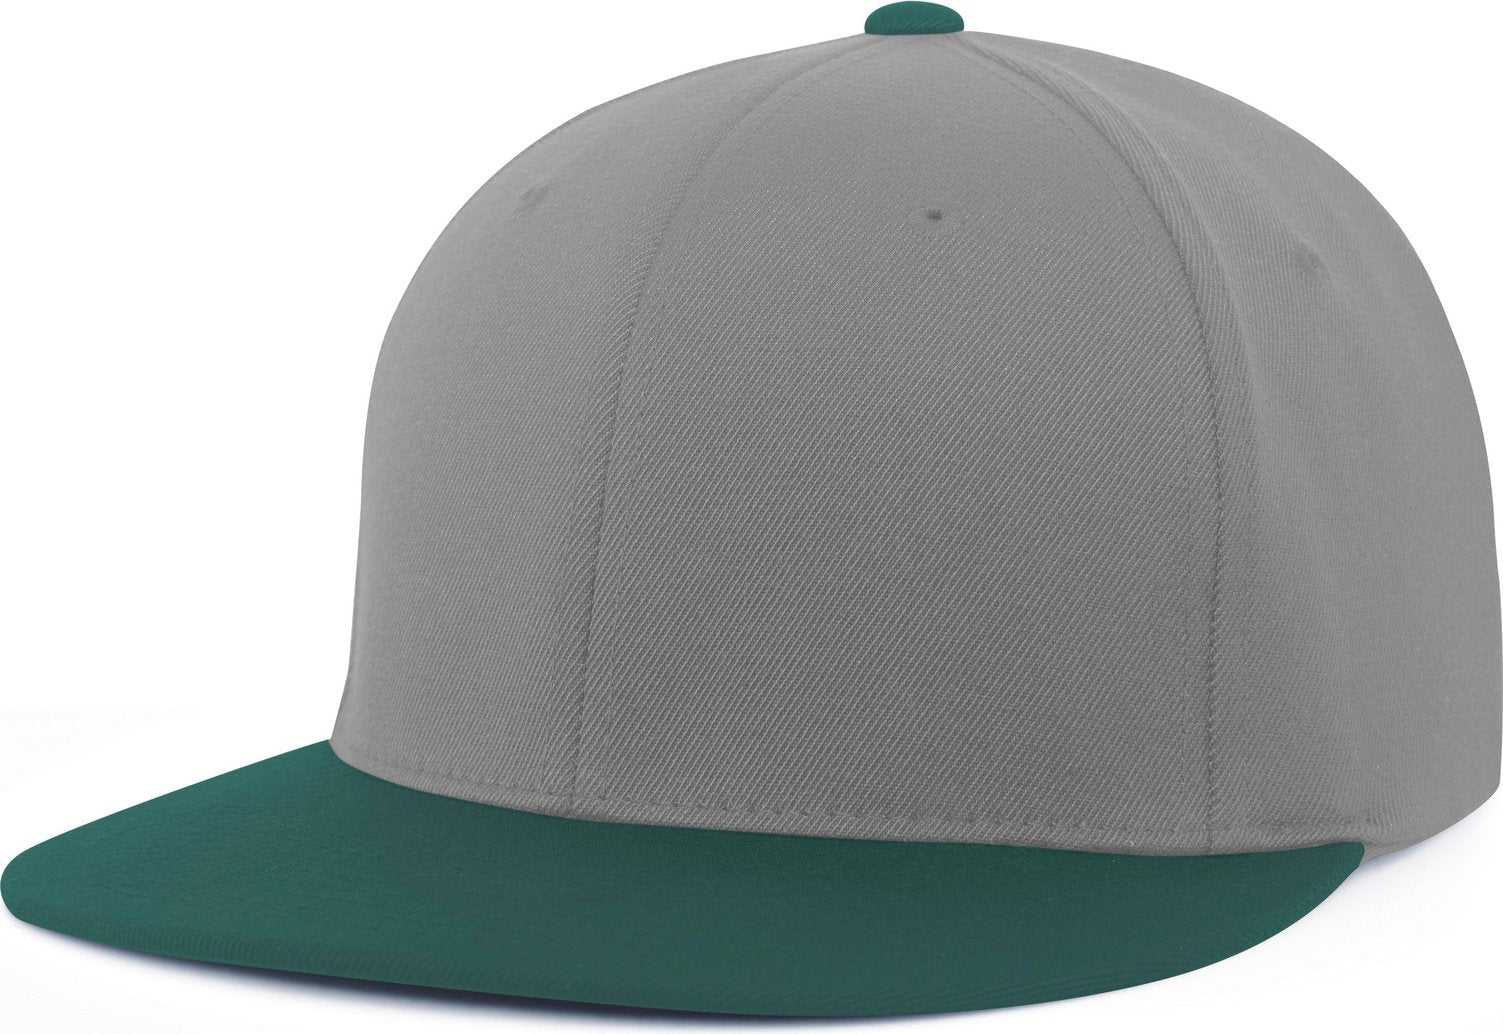 Pacific Headwear Es811 Premium A/C?›?ý Performance Flexfit Cap - Silver Dark Green - HIT a Double